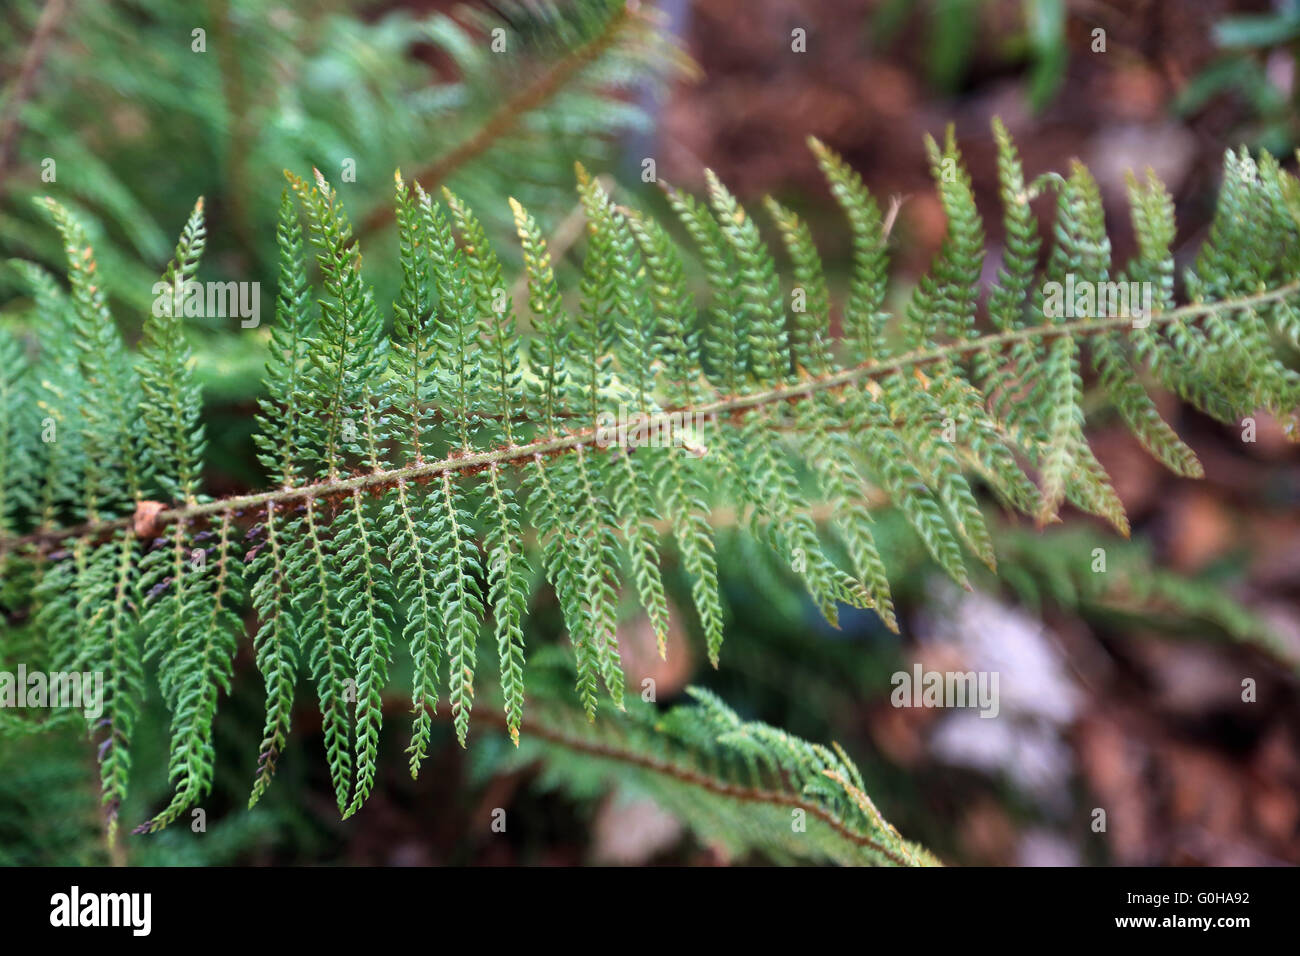 Japanese lady fern Stock Photo